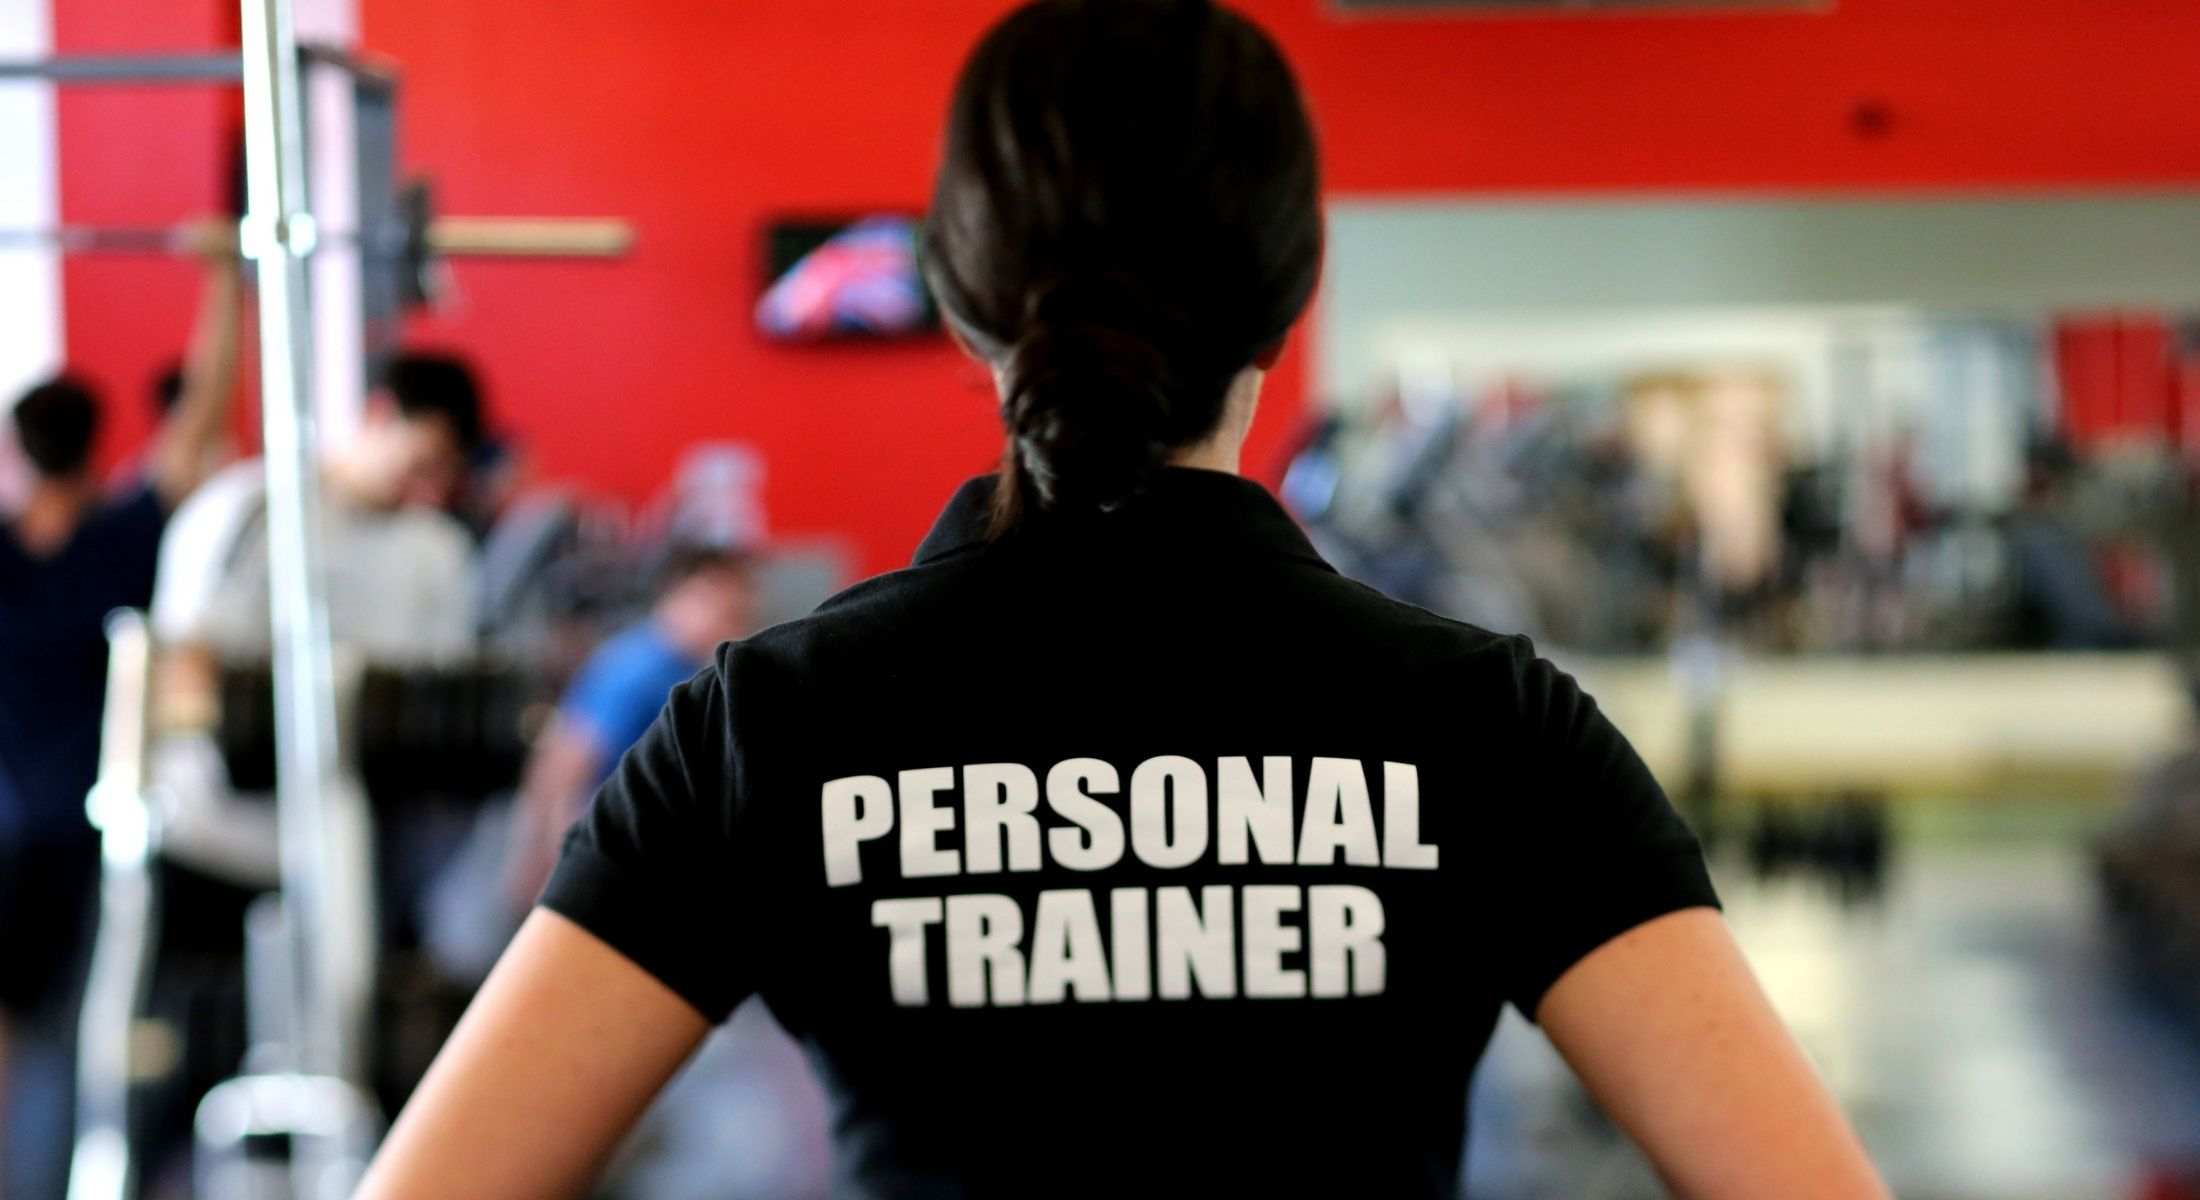 Come scegliere un personal trainer per allenarsi - professionista